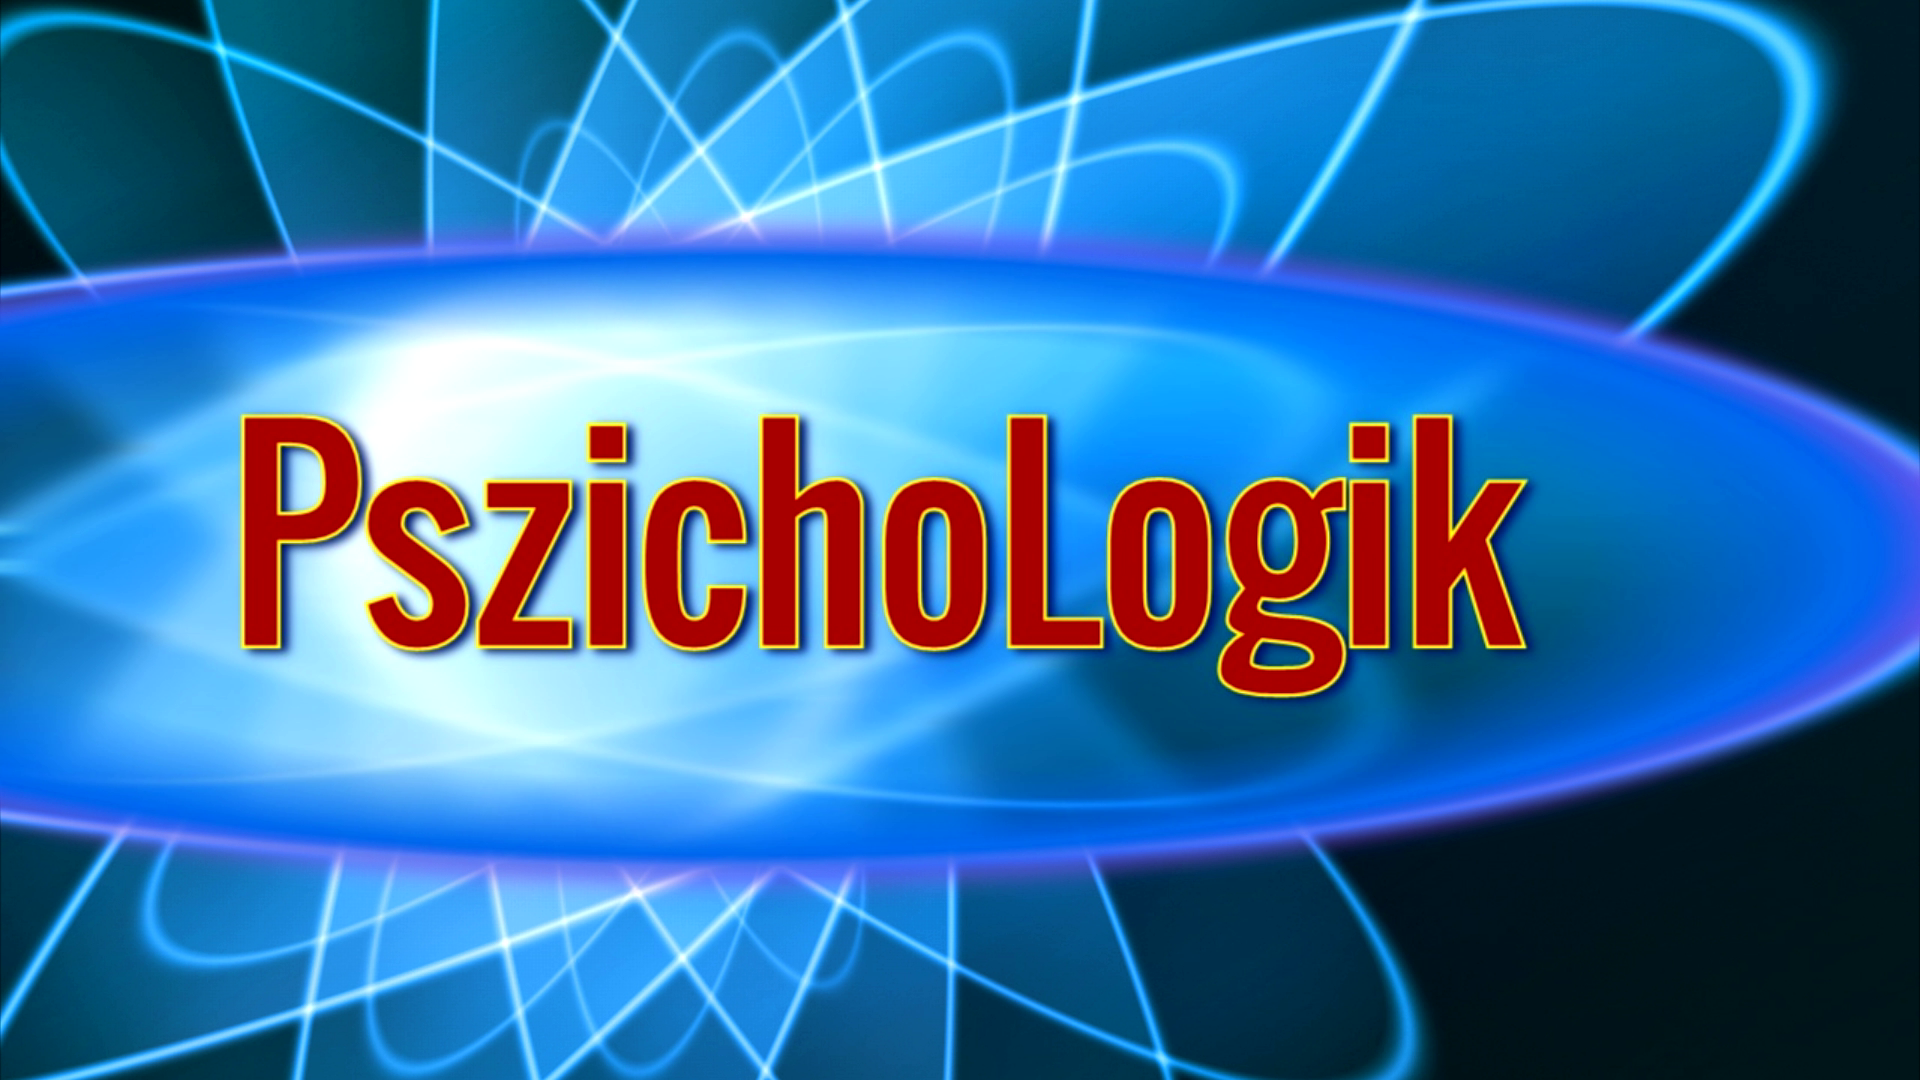 pszichologik_logo.png